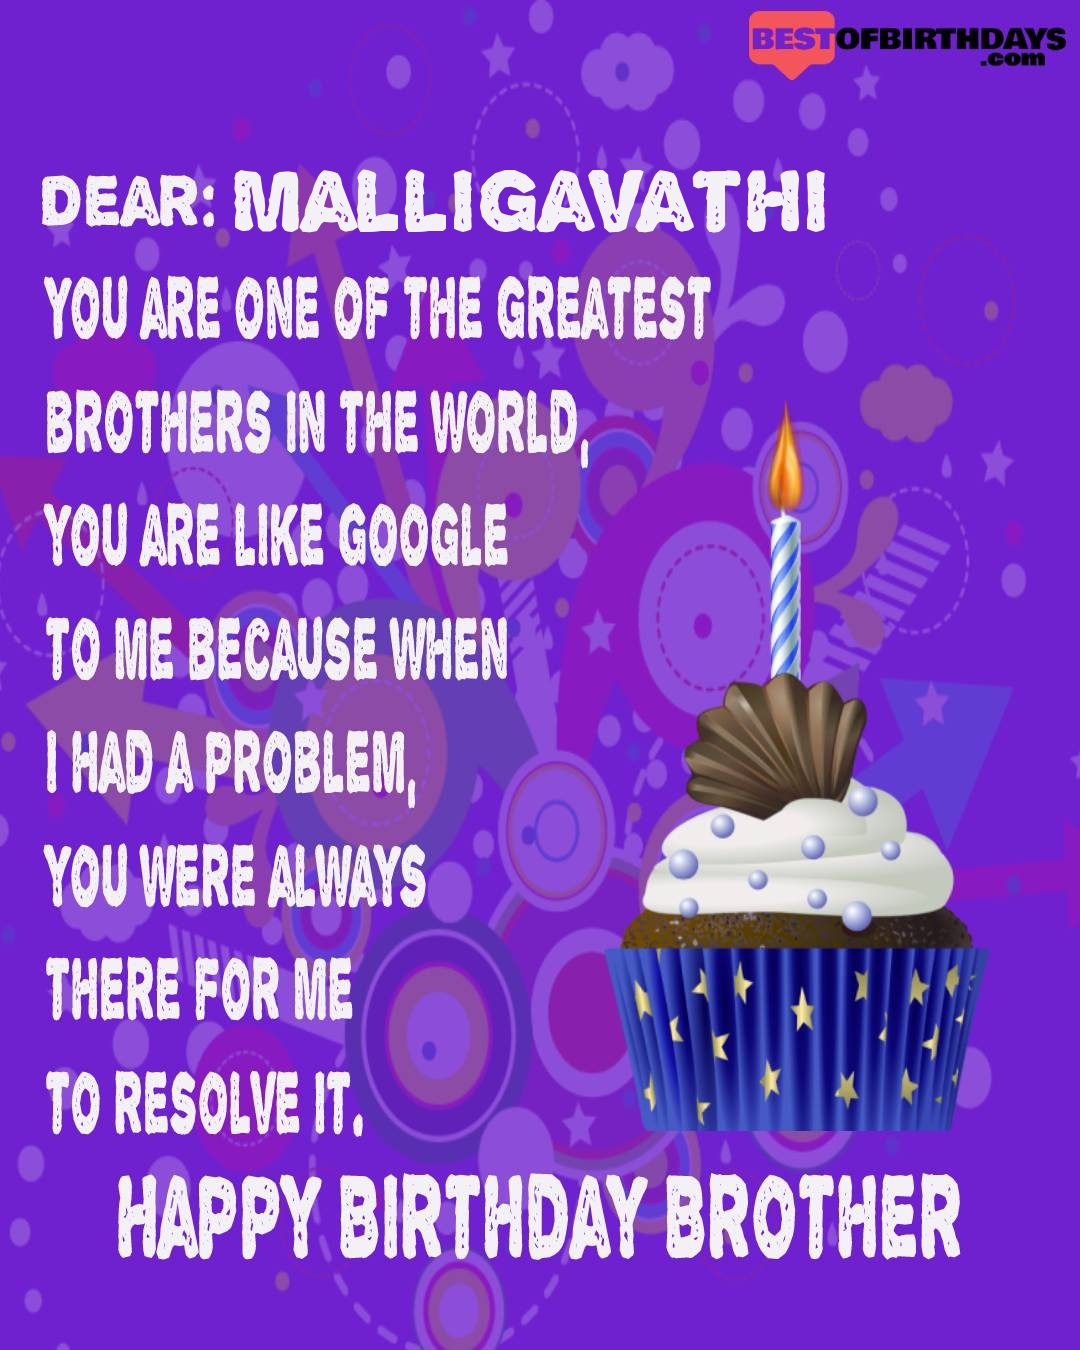 Happy birthday malligavathi bhai brother bro